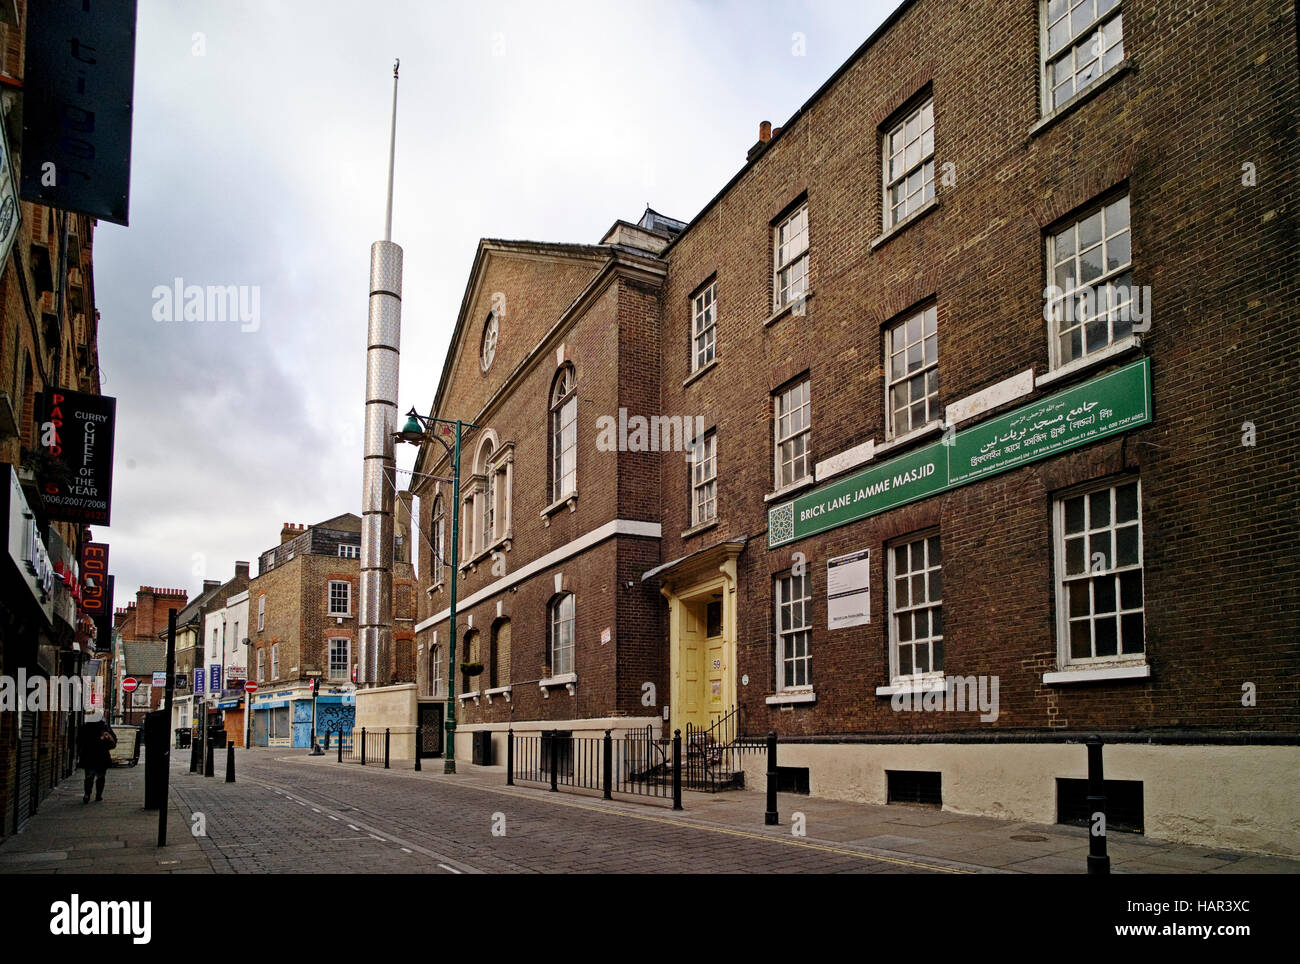 Jamme masjid brick lane mosquée, un huguenot auparavant l'Eglise et la synagogue à Brick Lane spitalfields Londres avec minaret Banque D'Images